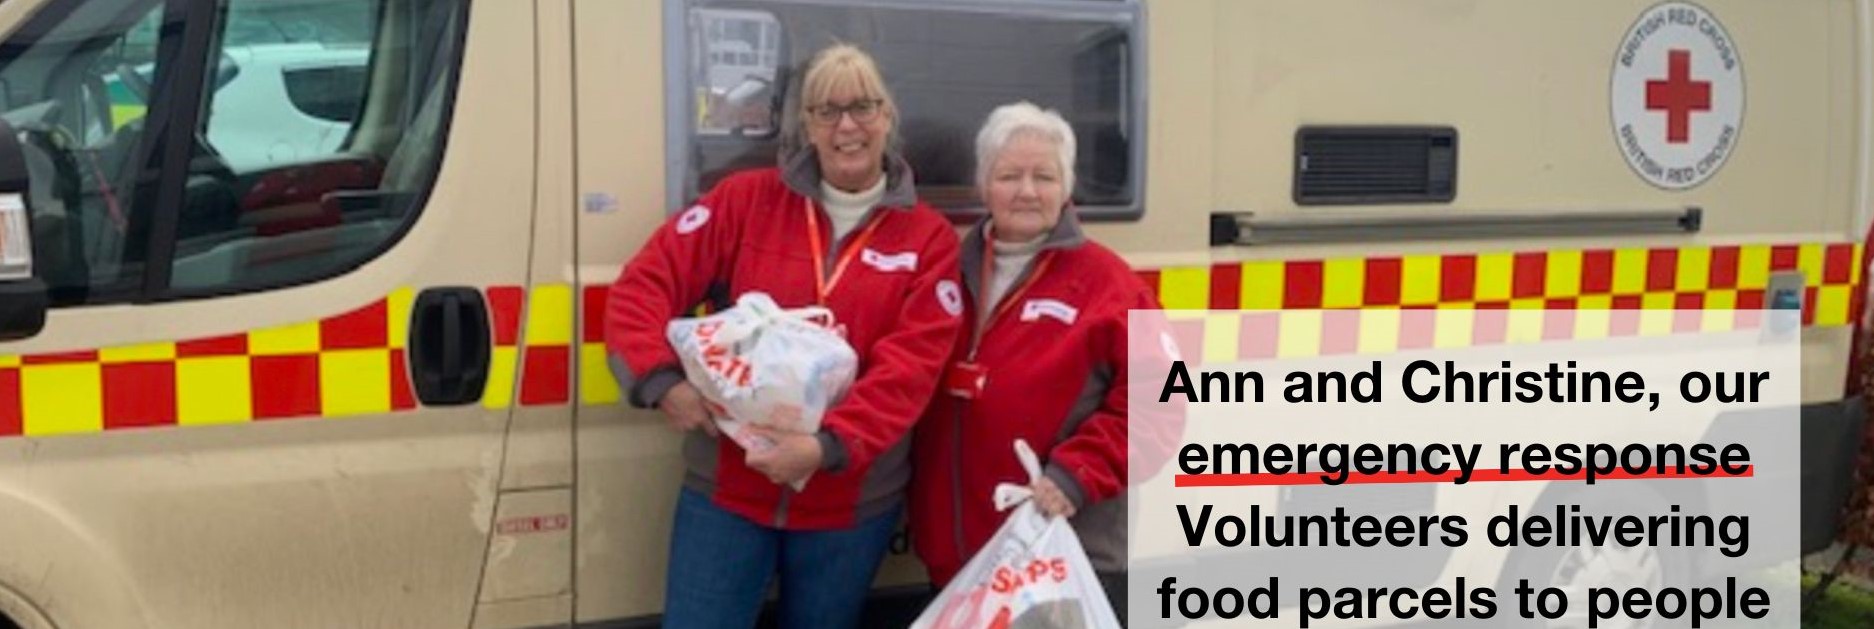 volunteers delivering food parcels